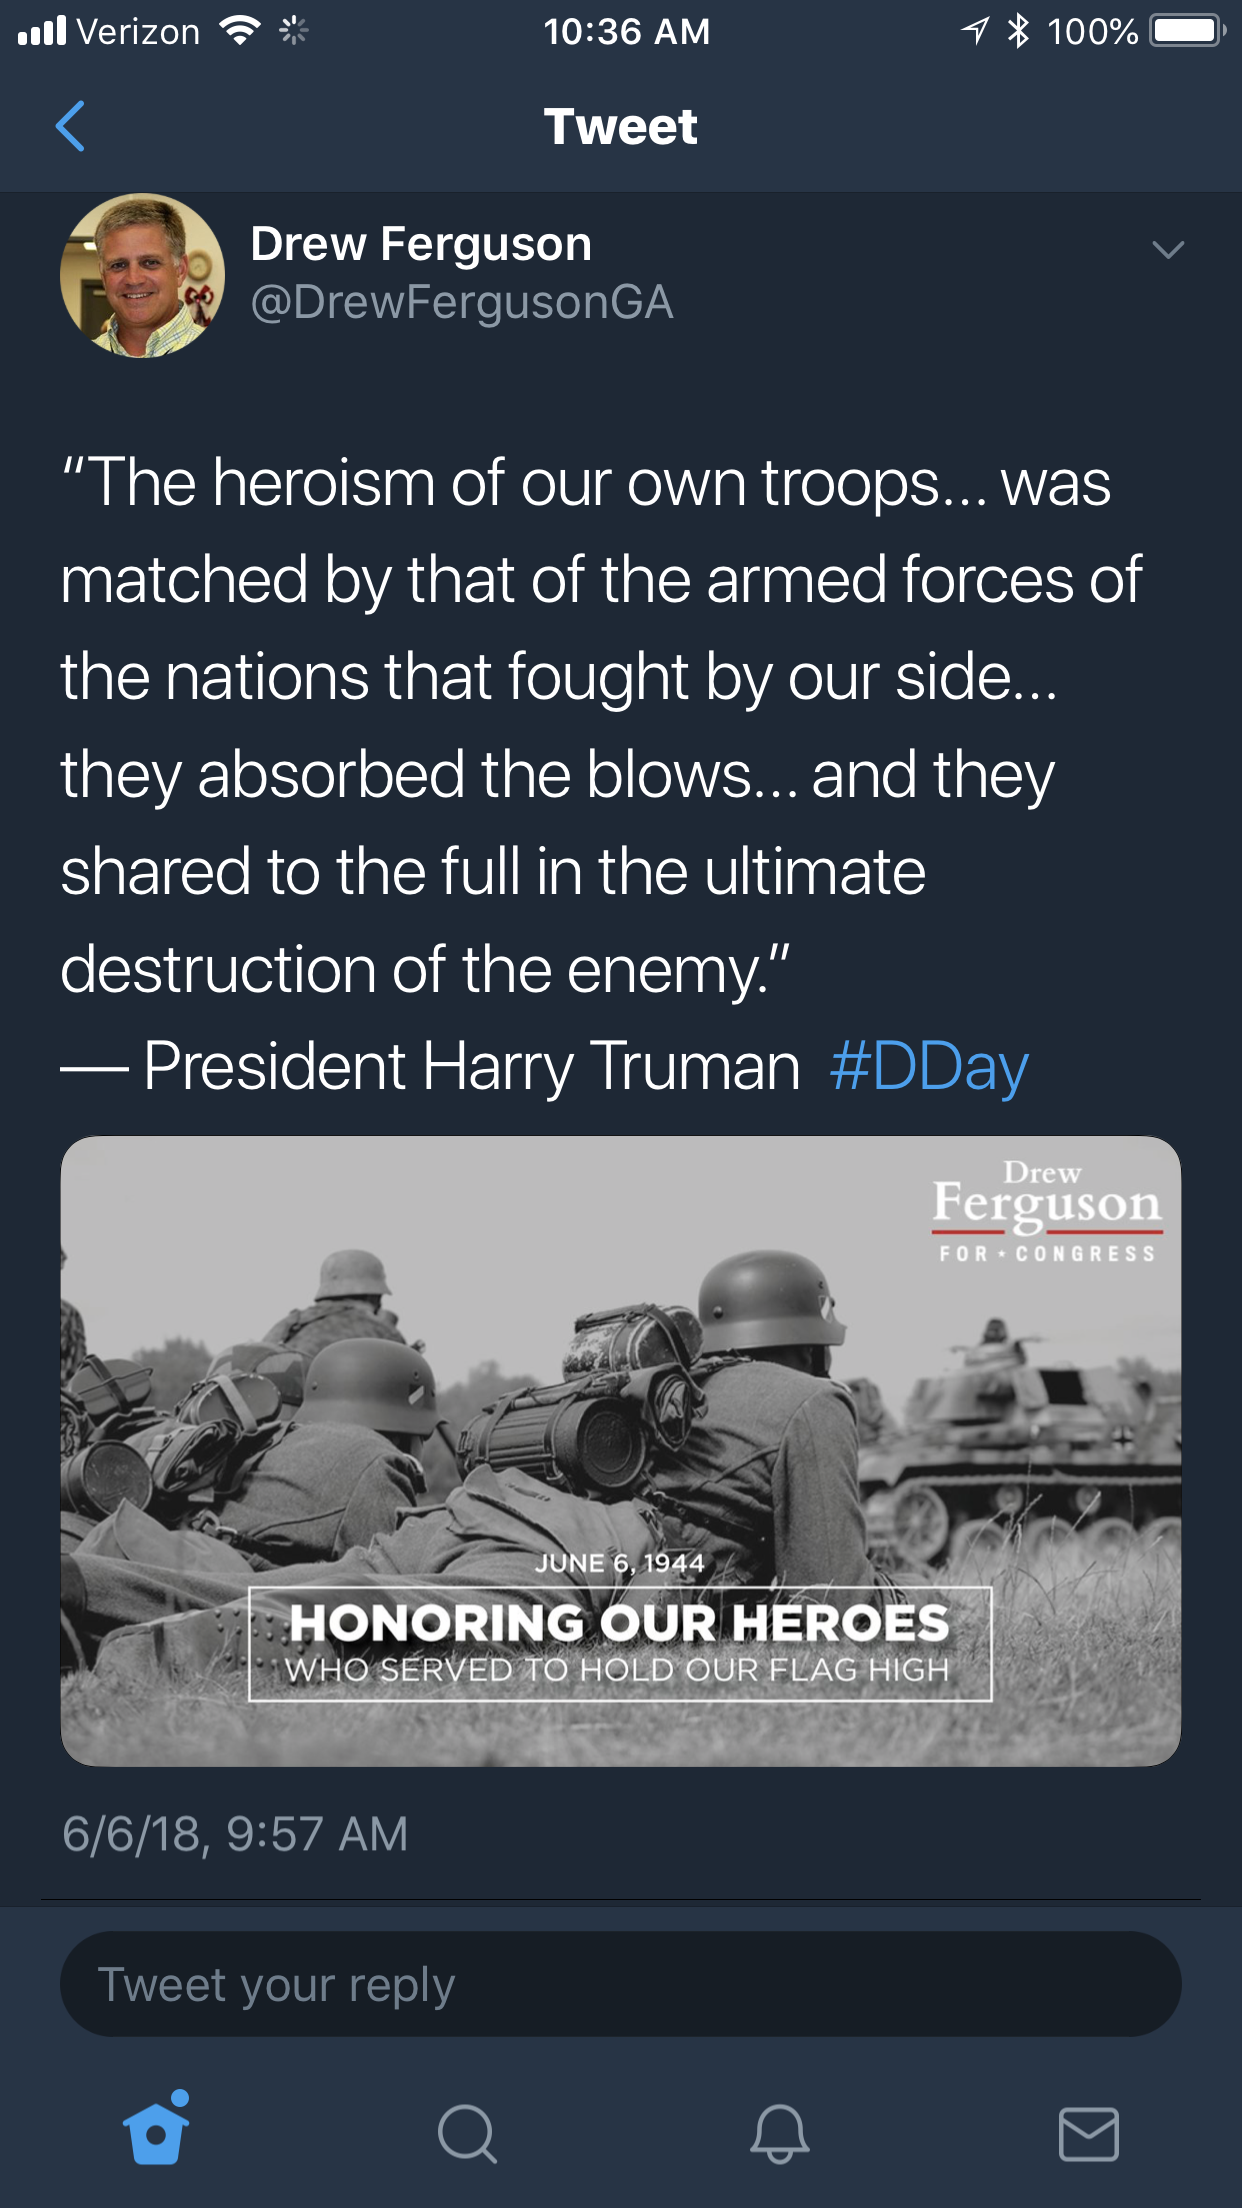 Drew Ferguson D-Day Tweet